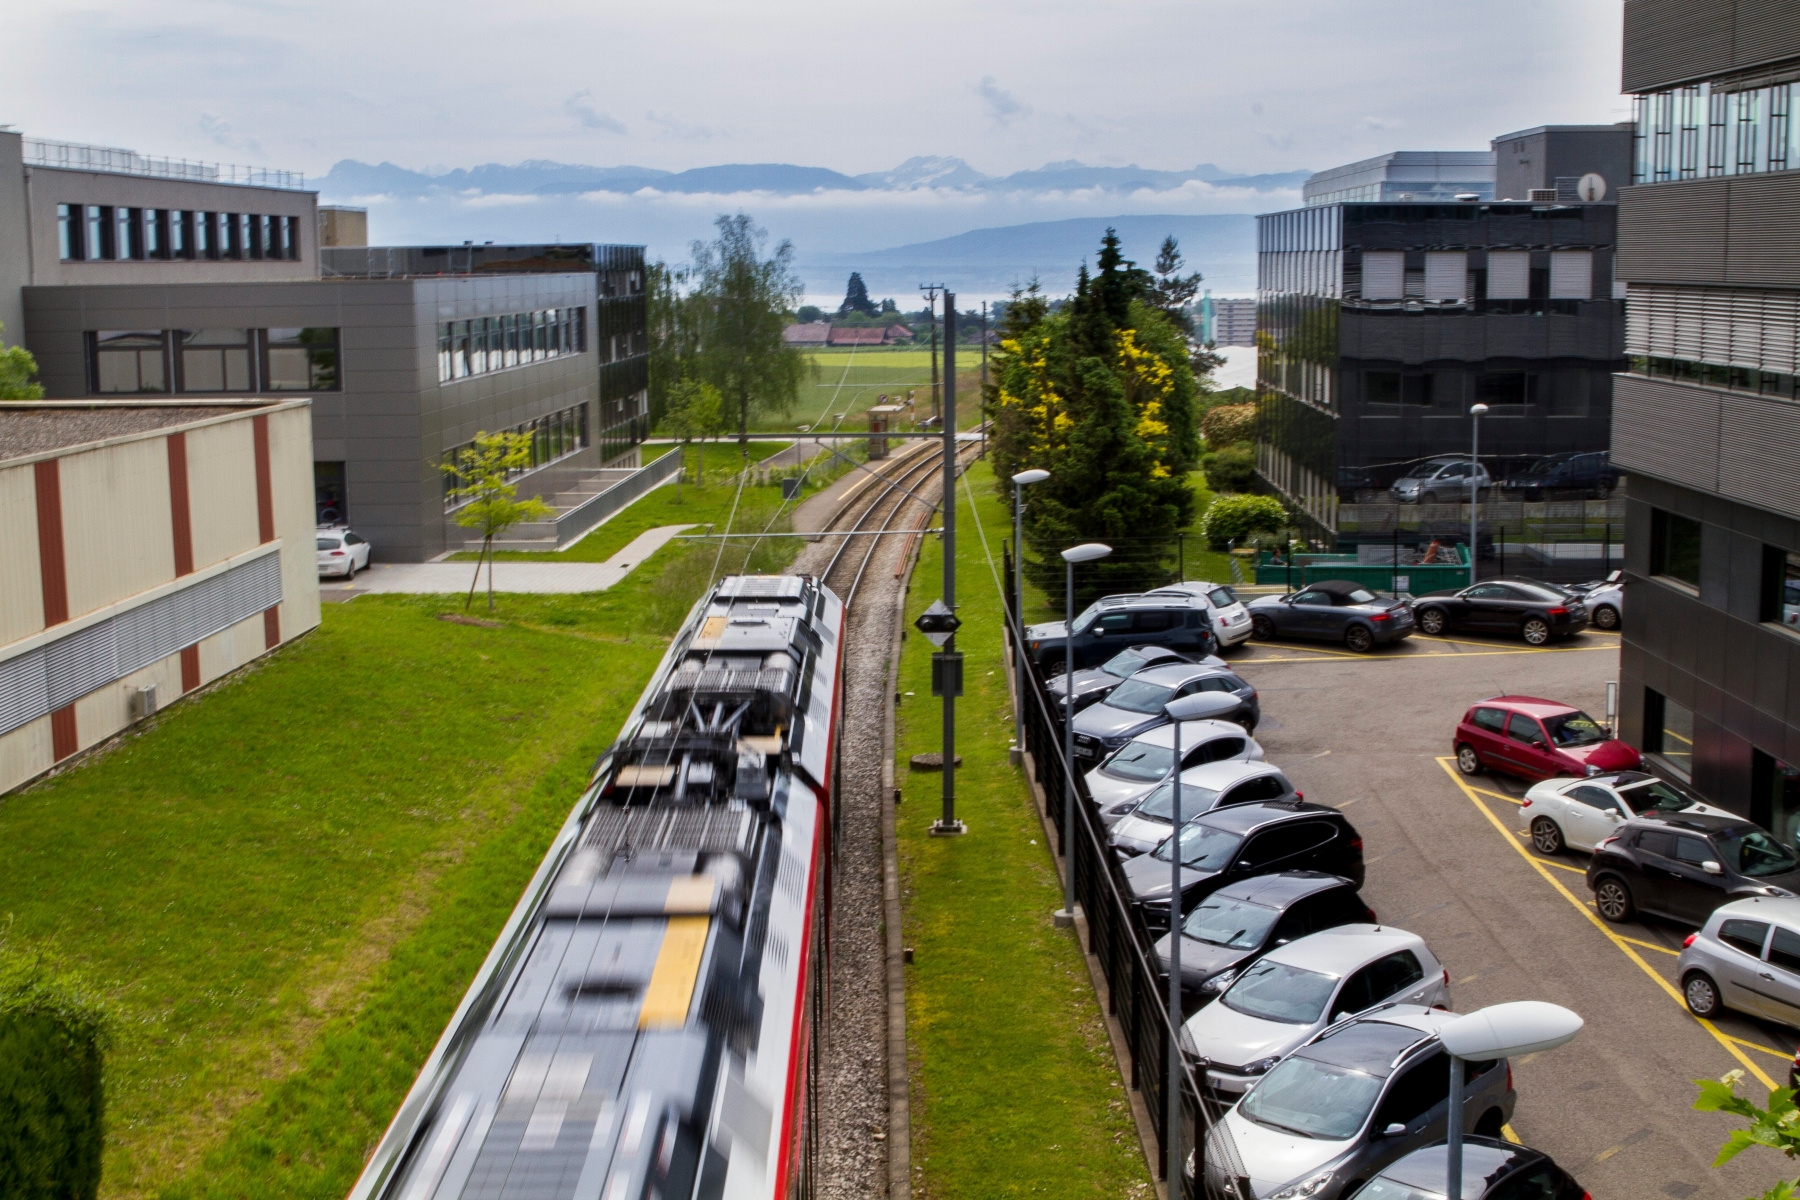 Mobilité: débat transports publics VS voitures.
Petit train ligne Nyon-St-Cergue-Morez (NStCM) d'un côté, parking de voitures de l'autre.
Jeudi 26 mai 2016, Nyon. Mobilité - Débat Transports Publics VS Voitures